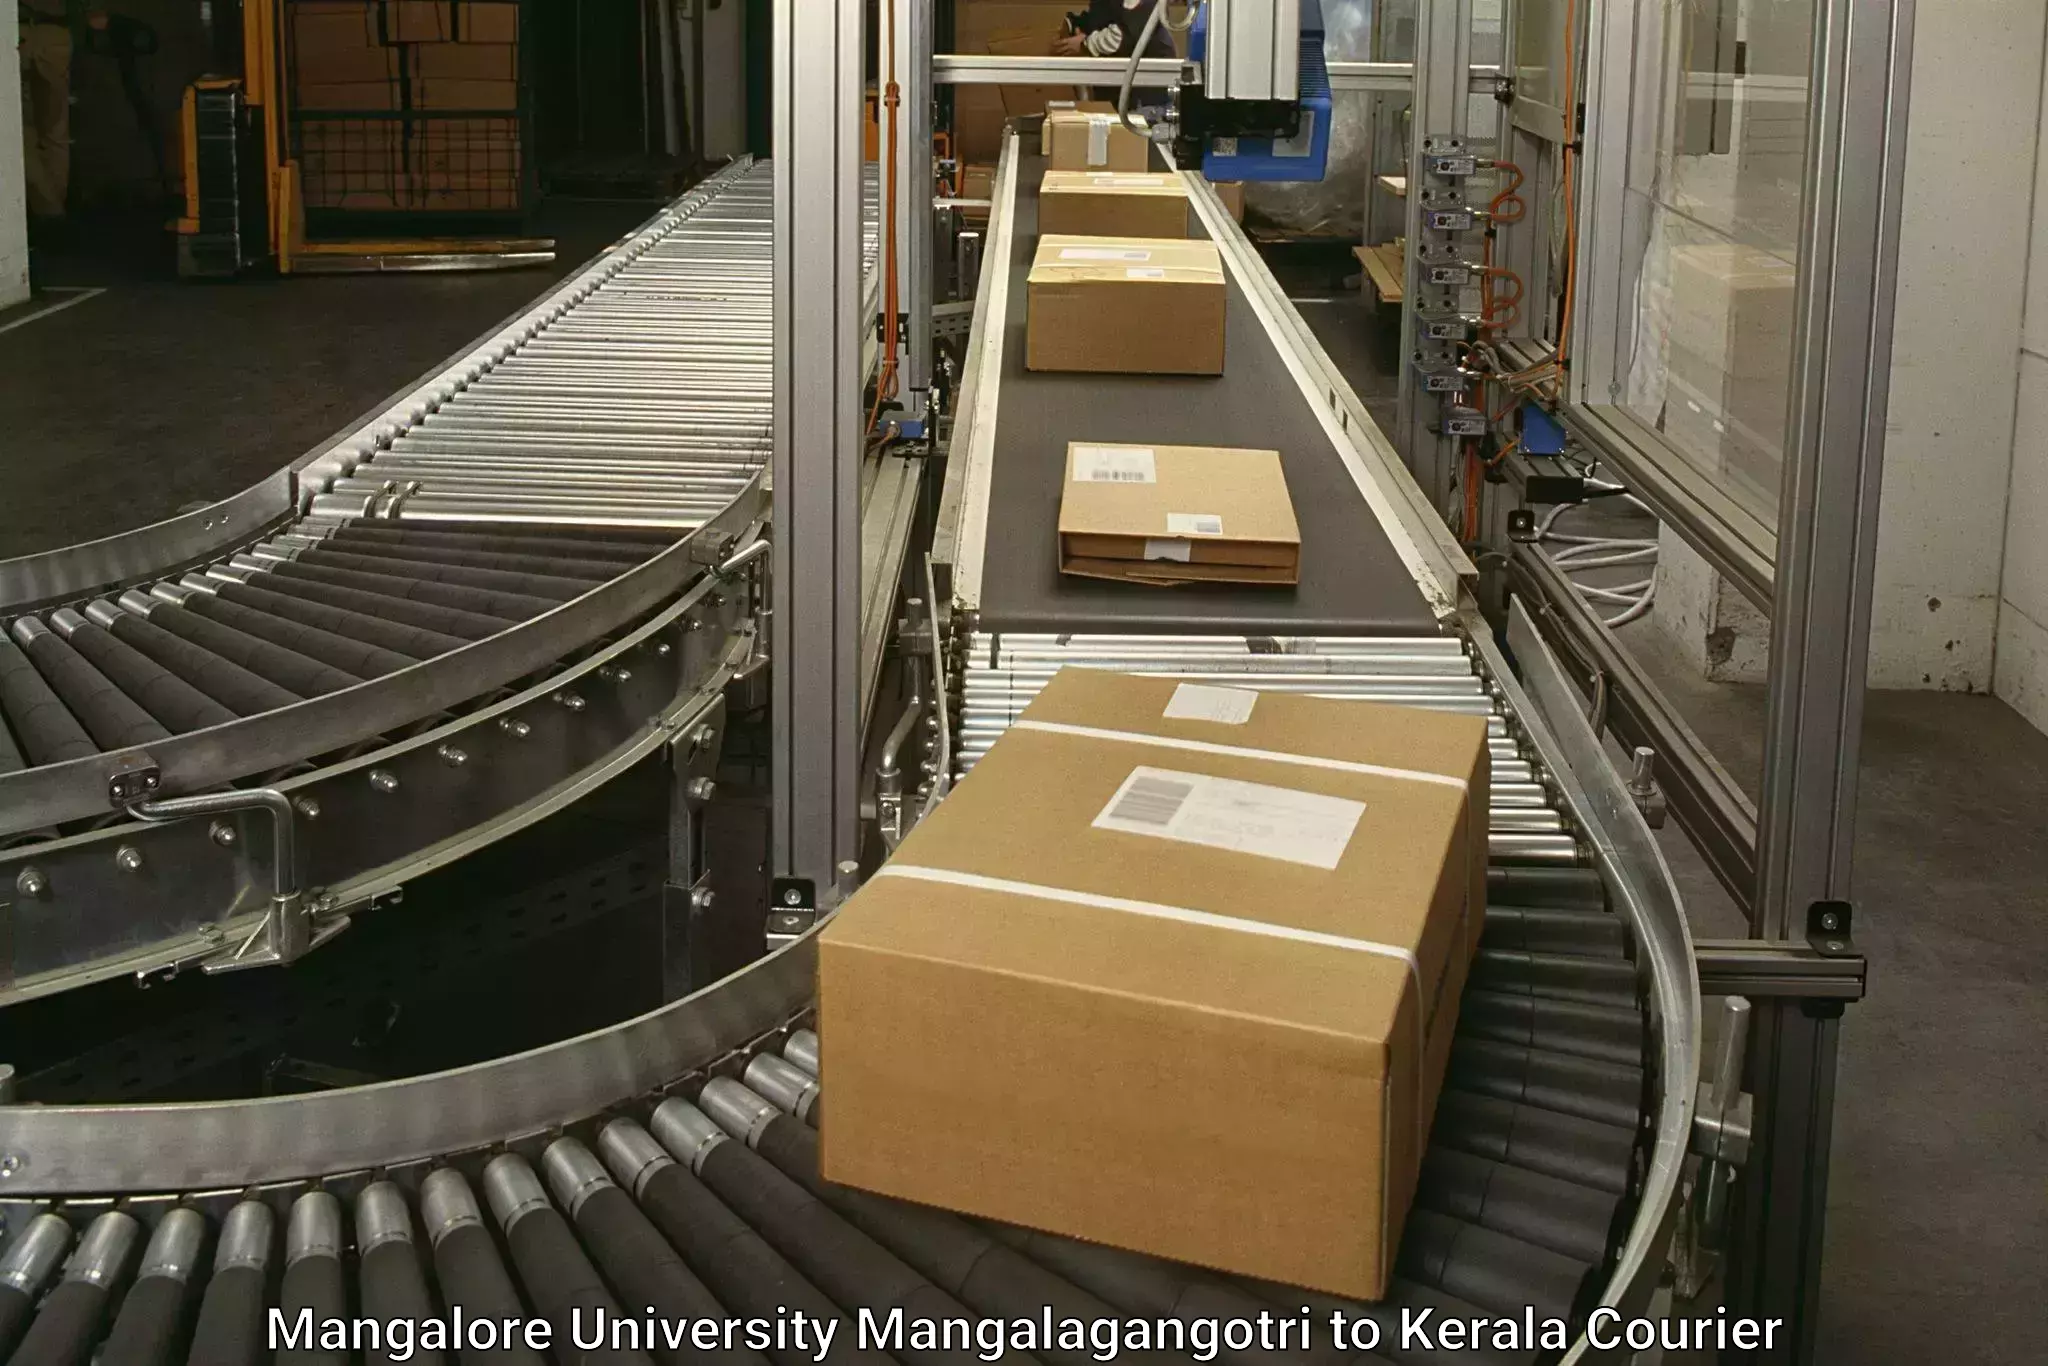 Return courier service Mangalore University Mangalagangotri to Irinjalakuda